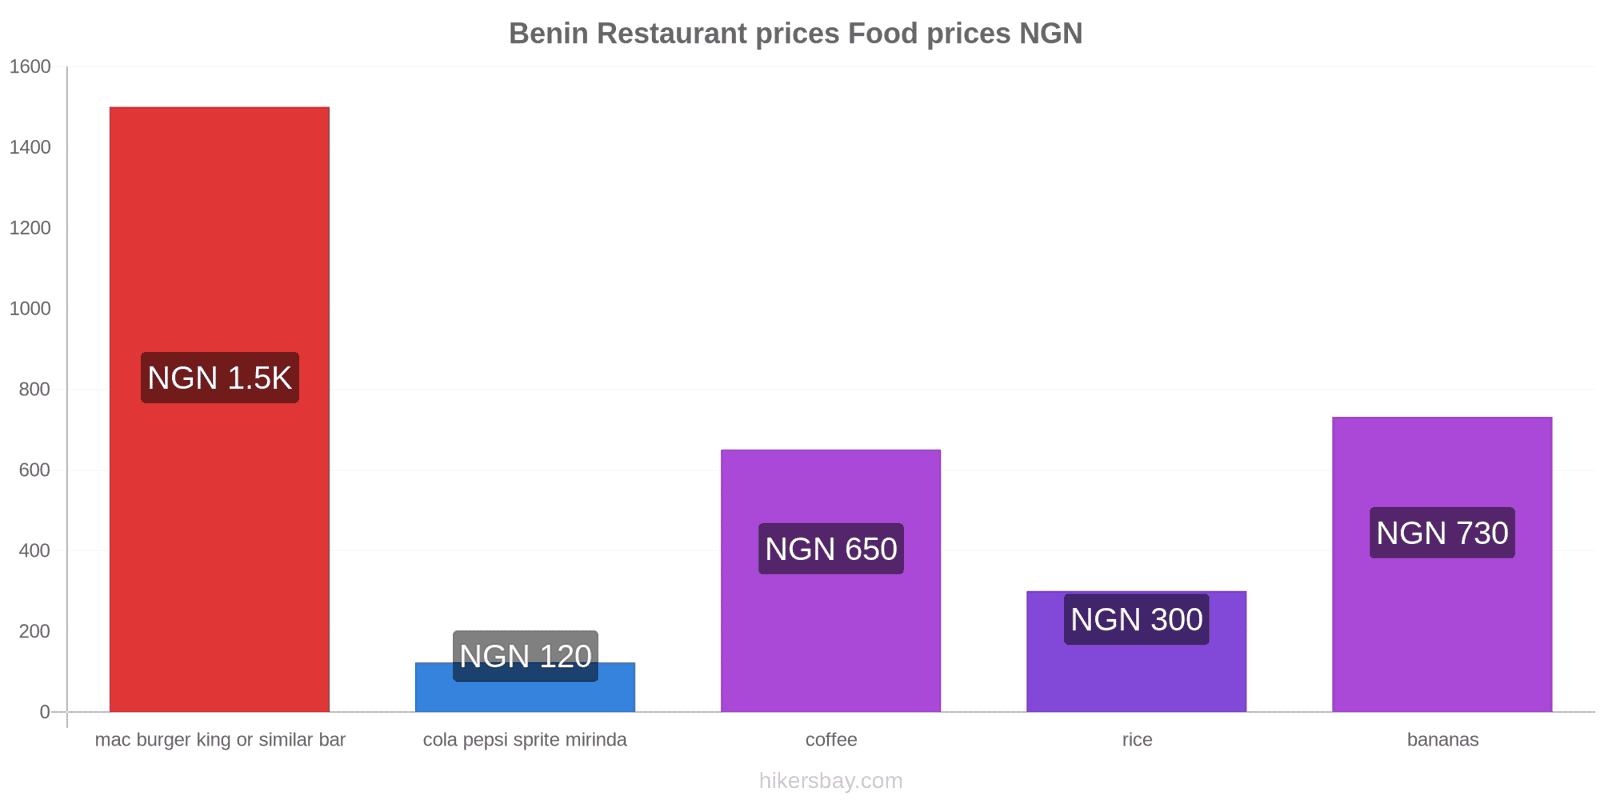 Benin price changes hikersbay.com